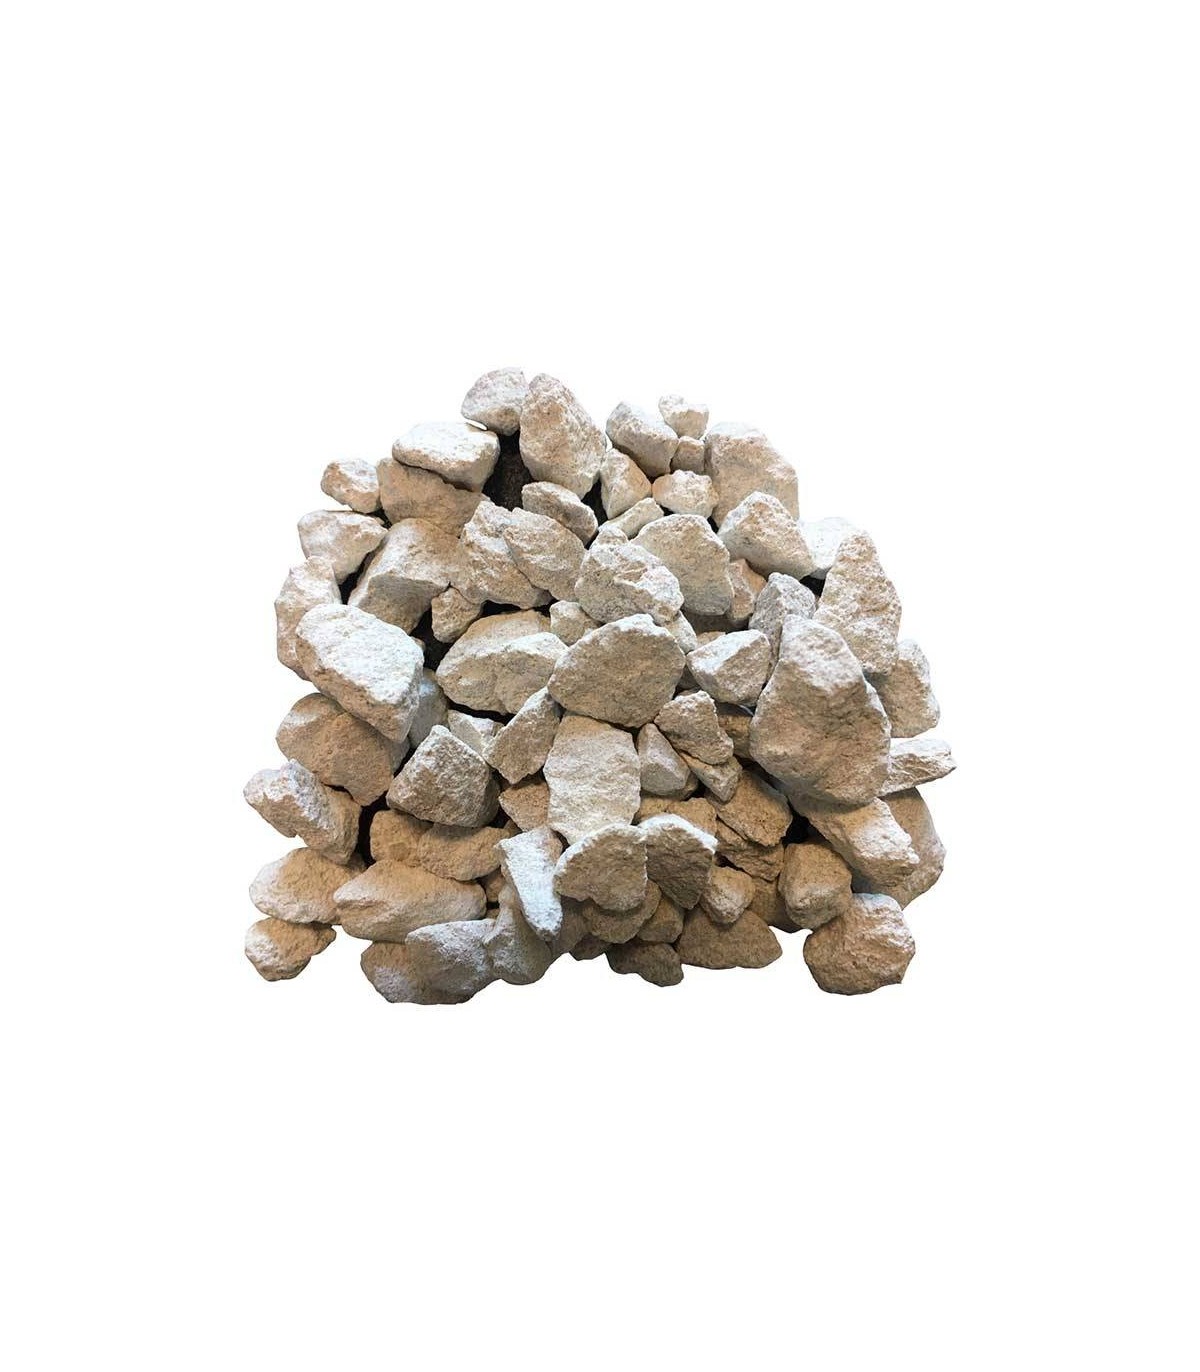 Gravier blanc calcaire pour allées : big bag de 750 kg